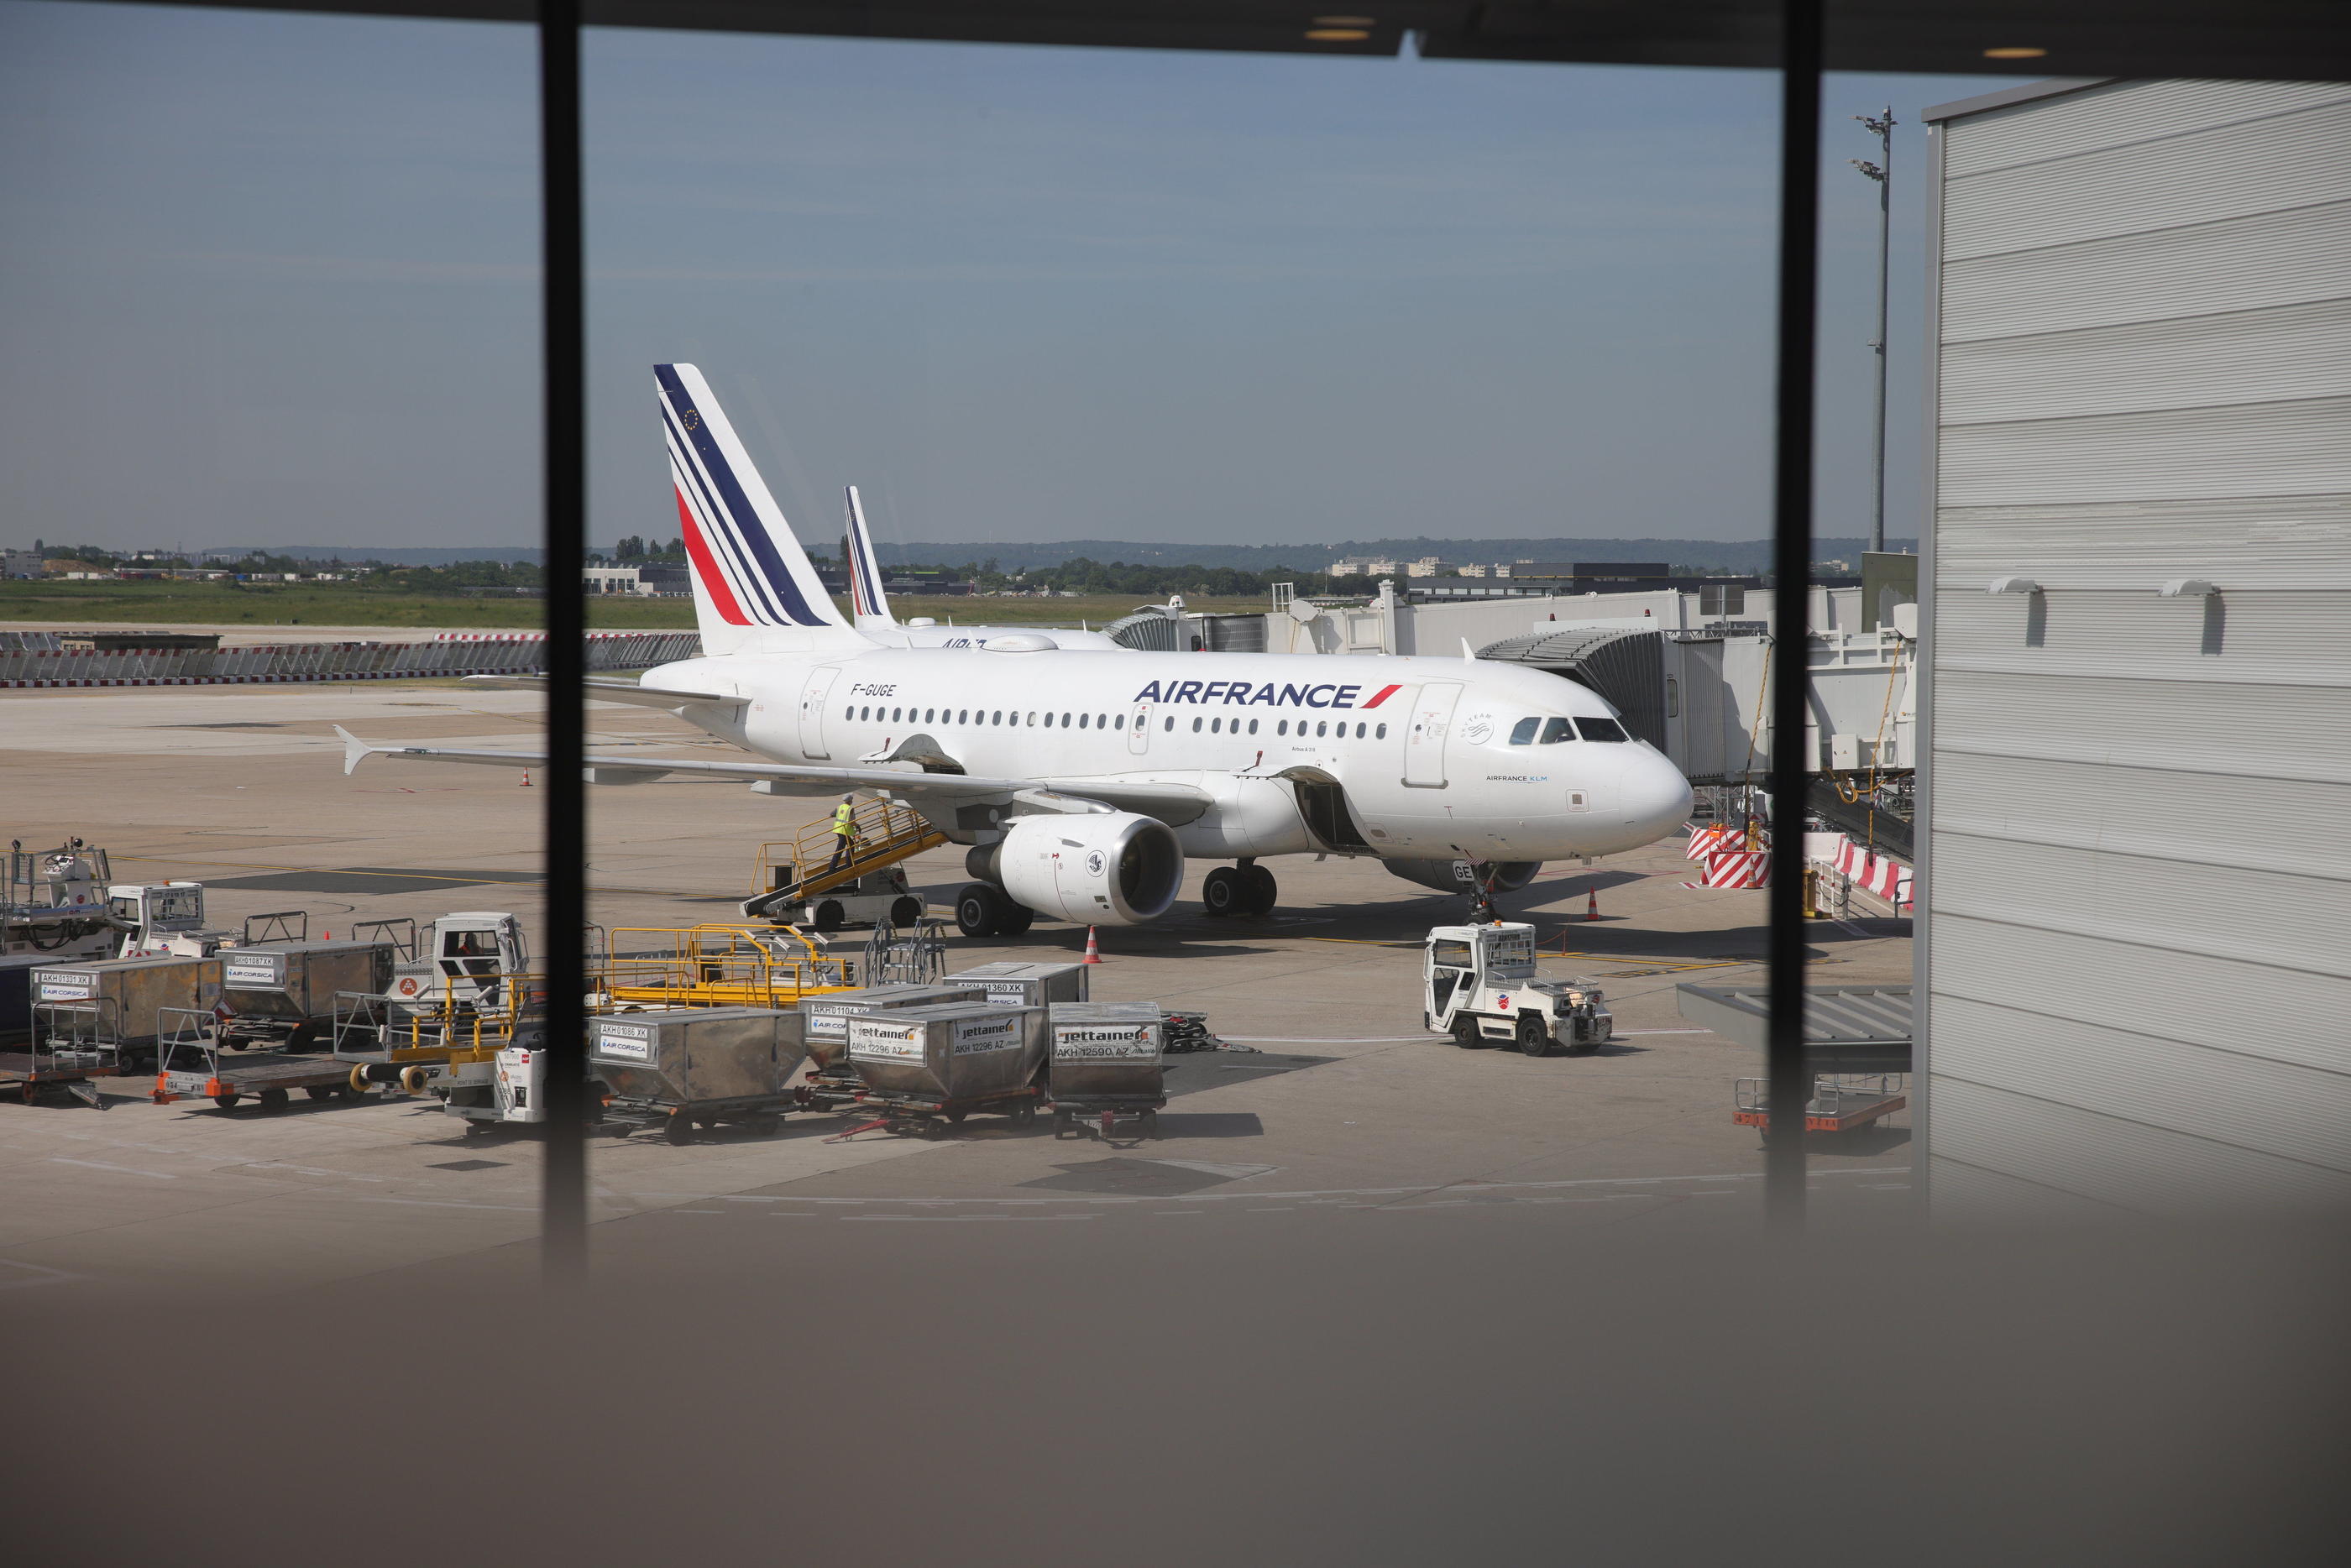 Le 26 juillet prochain, les avions resteront cloués au sol dans les aéroports franciliens (ici Orly). LP/Olivier Arandel